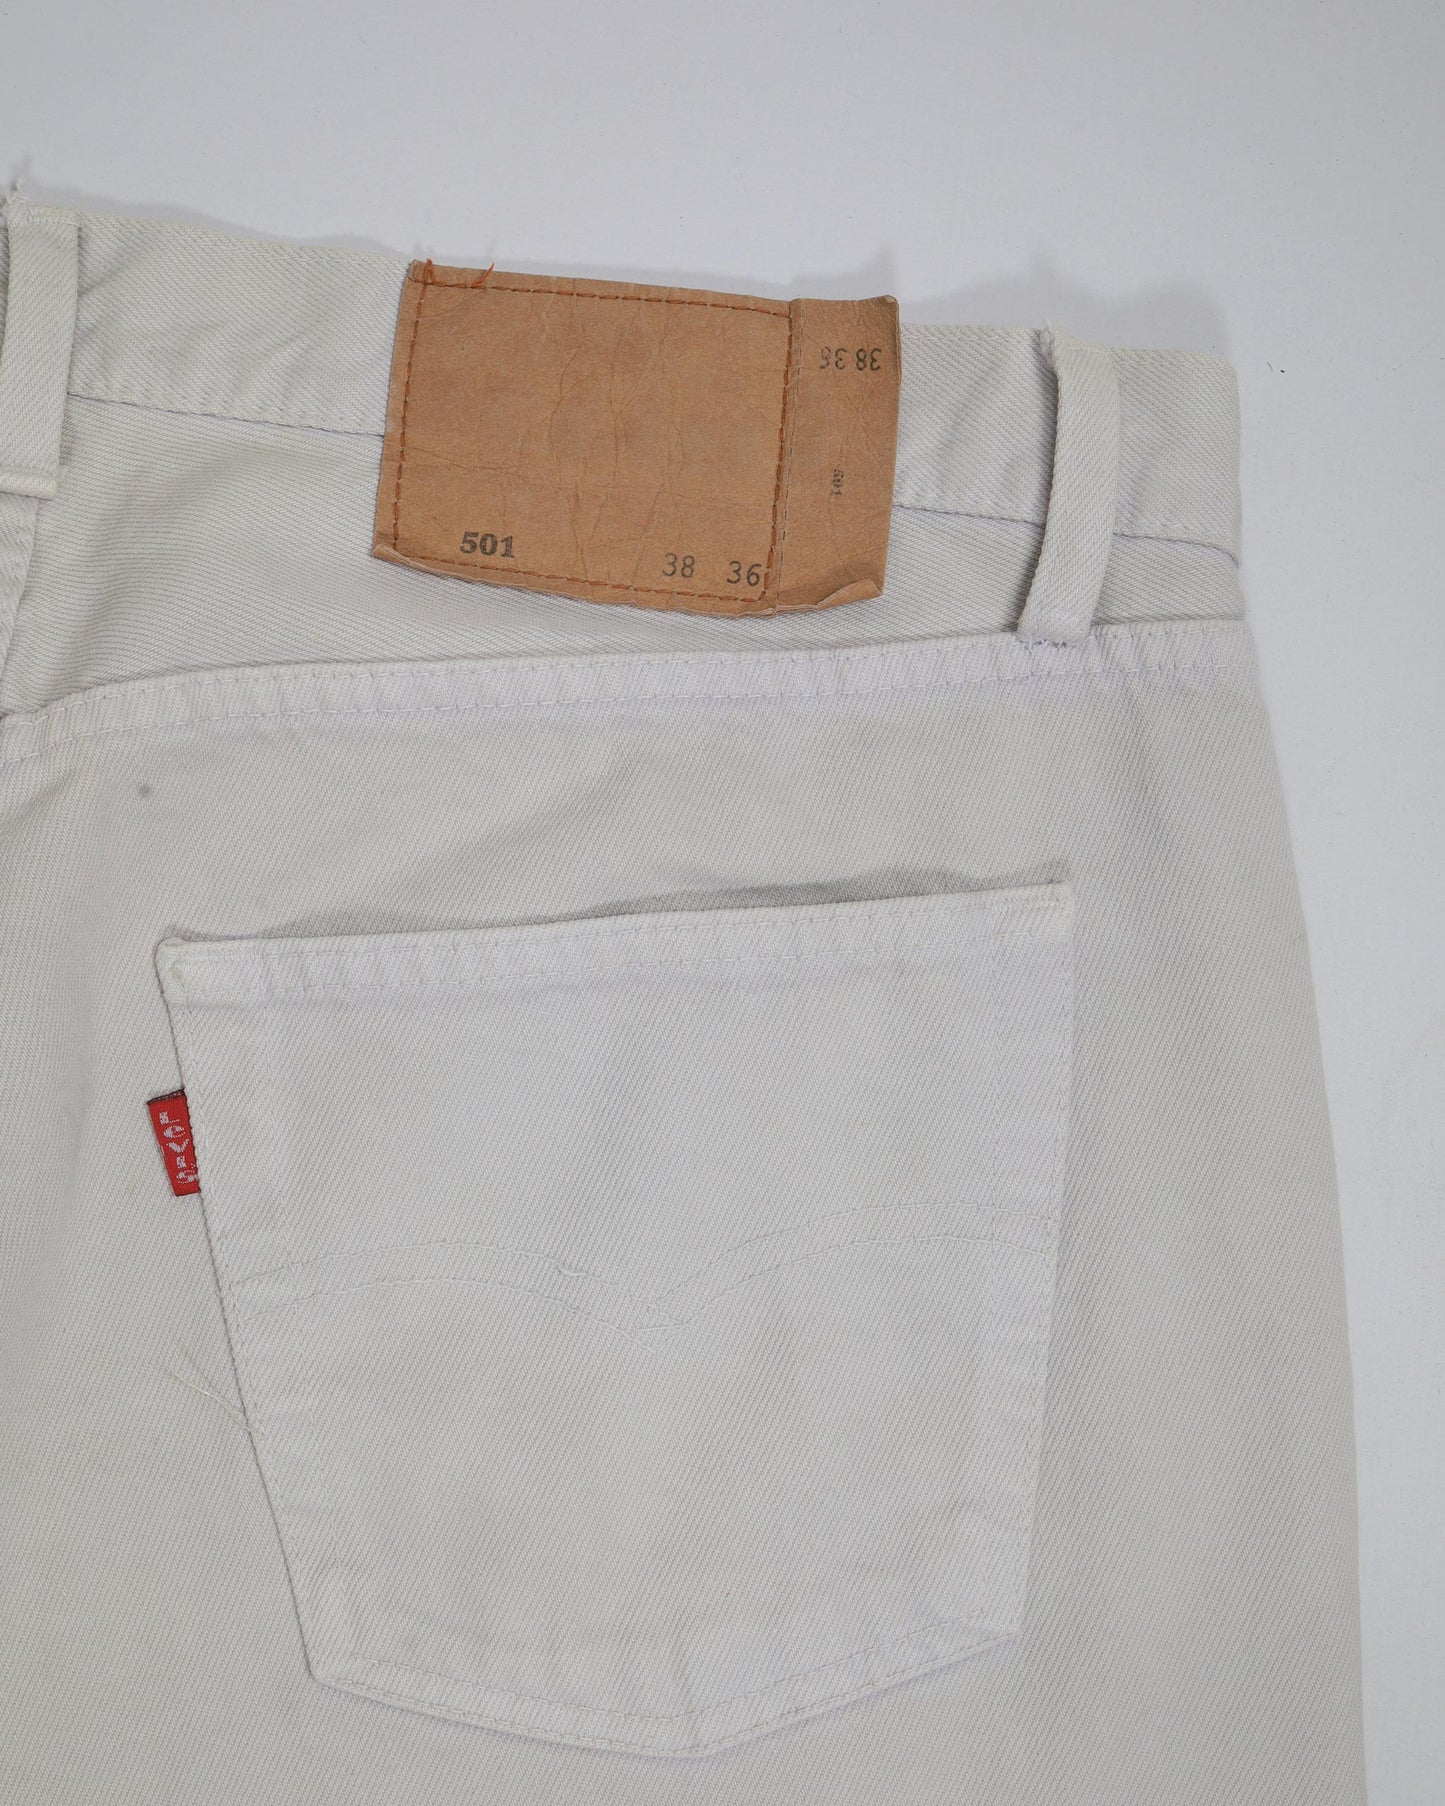 Jeans vintage Levi's 501 dal taglio dritto